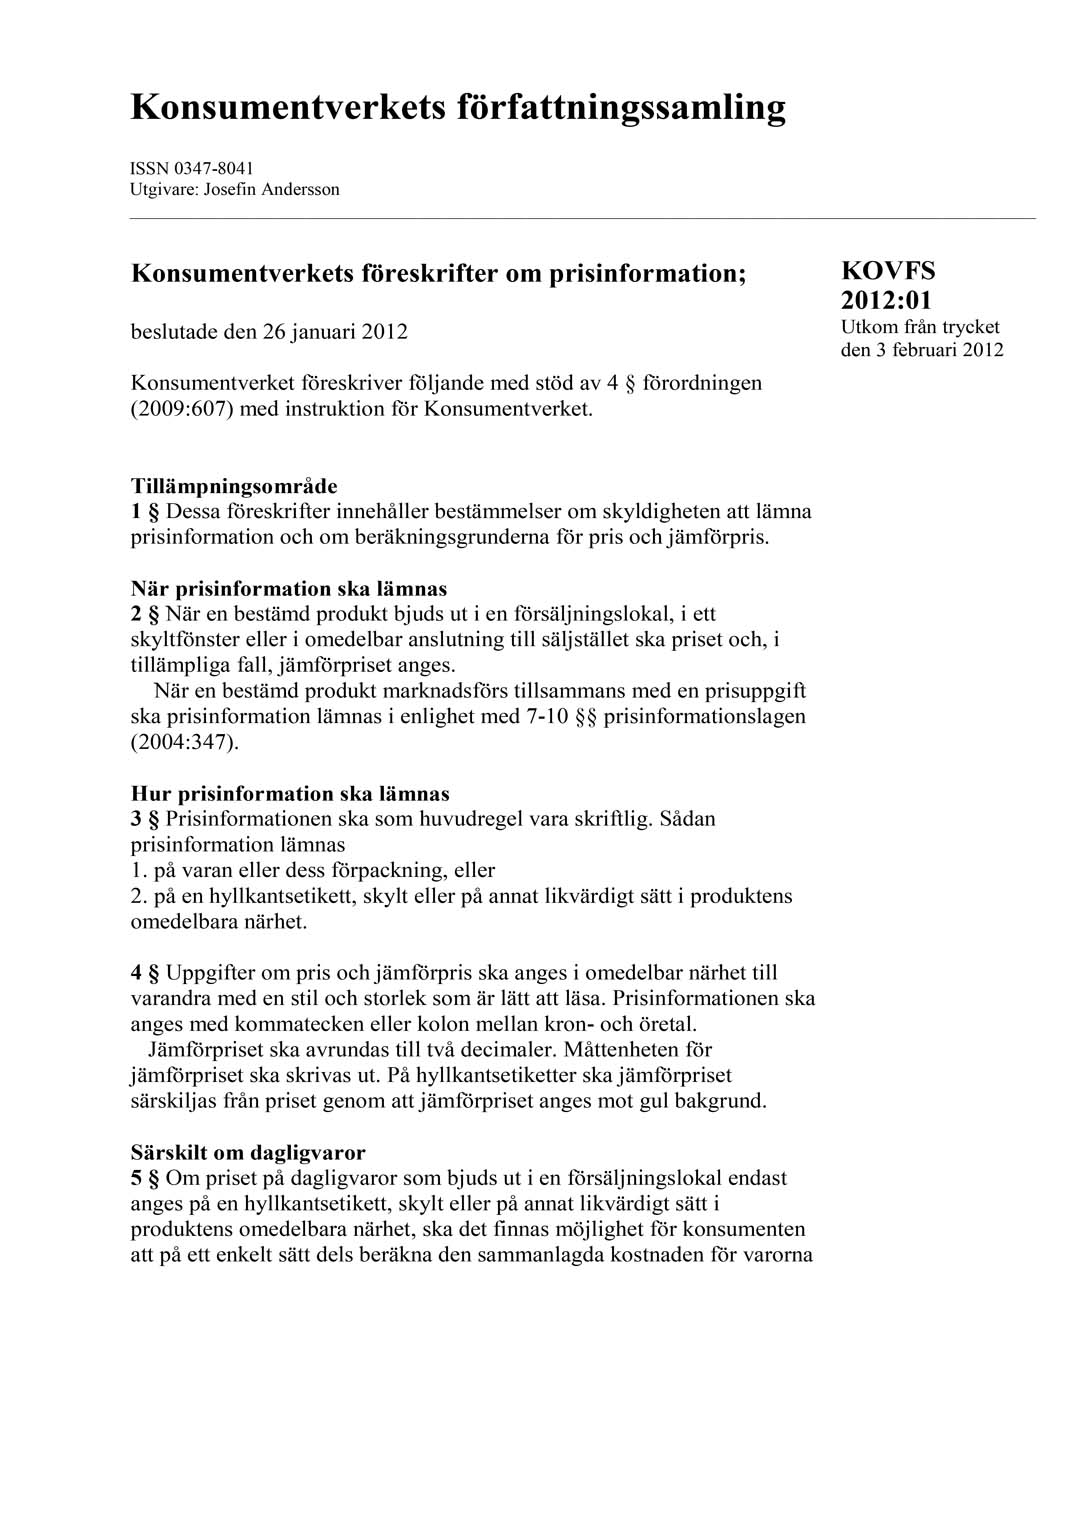 KOVFS 2012:1 Konsumentverkets föreskrifter om prisinformation